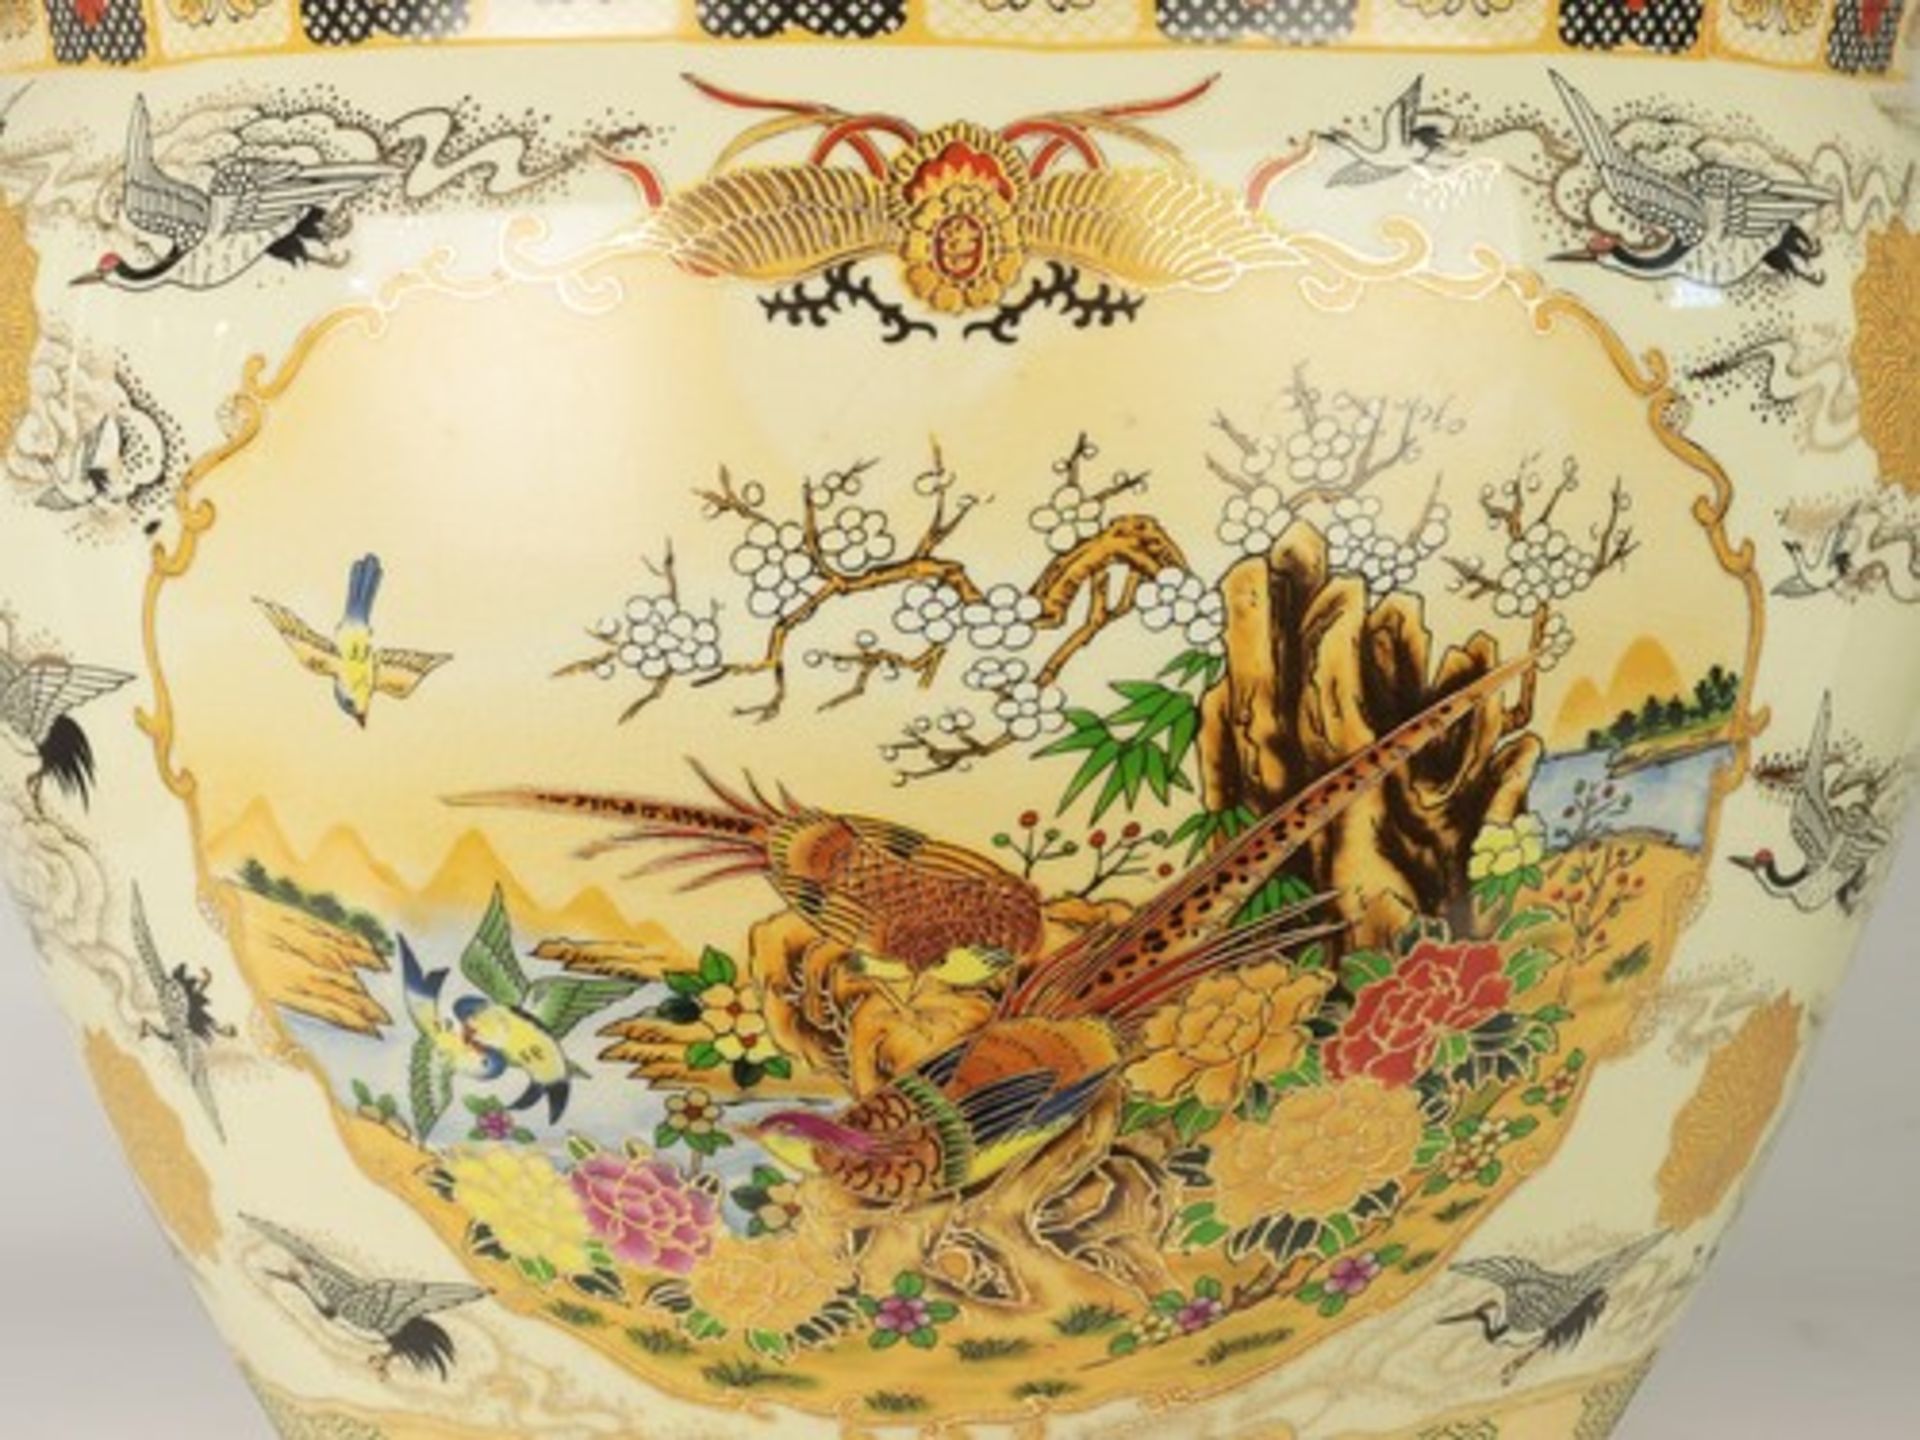 Fischbowlrote Marke, crown porcelin, heller Scherben, gebauchte Form, umlaufend polychromer - Bild 6 aus 7